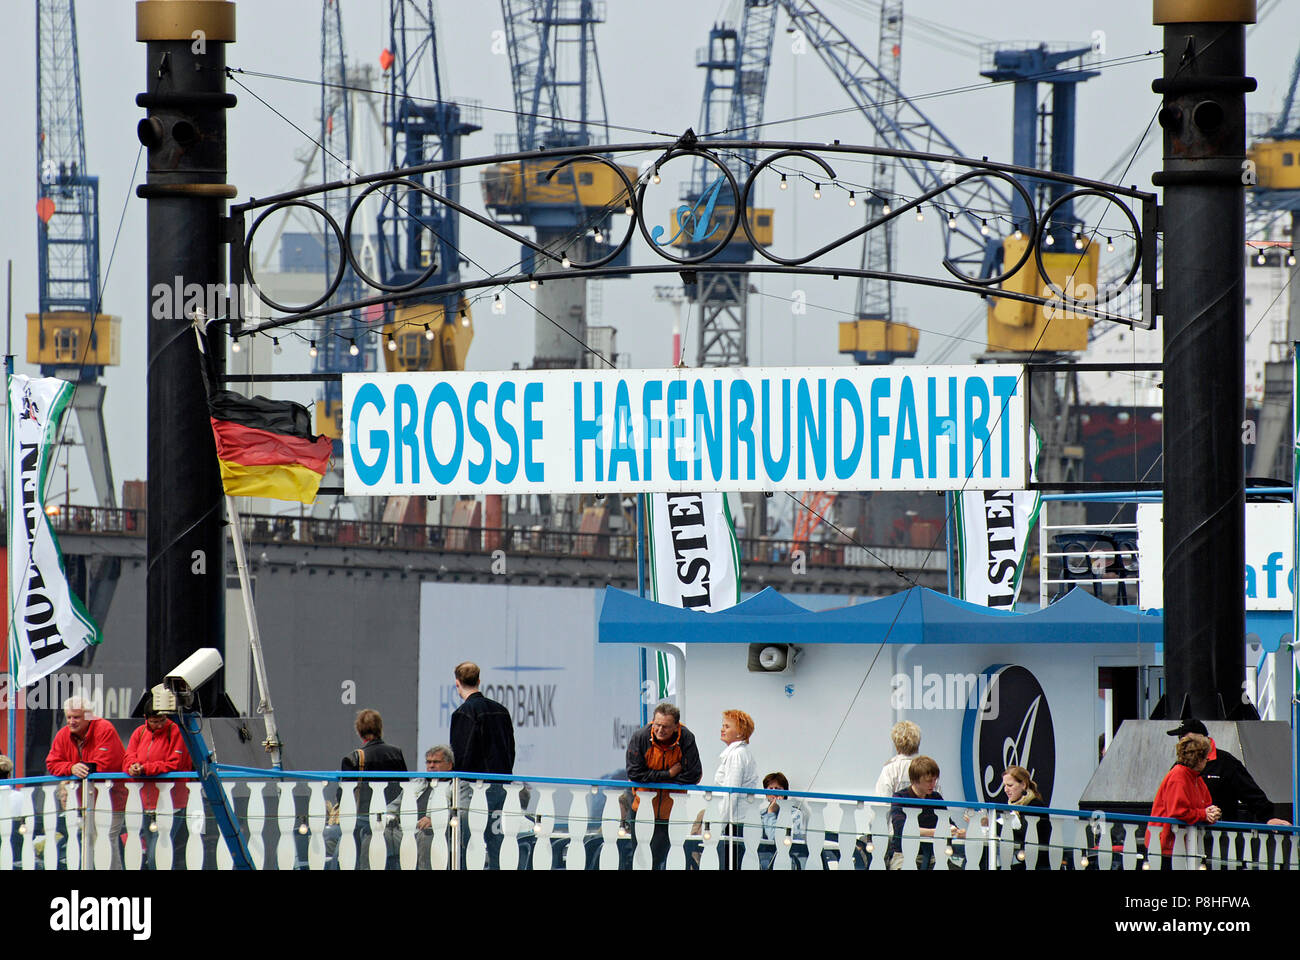 Grosse Hafenrundfahrt, Schild un einem Raddampfer der Reederei Abicht an den Landungsbruecken im Hamburger Hafen. Foto Stock